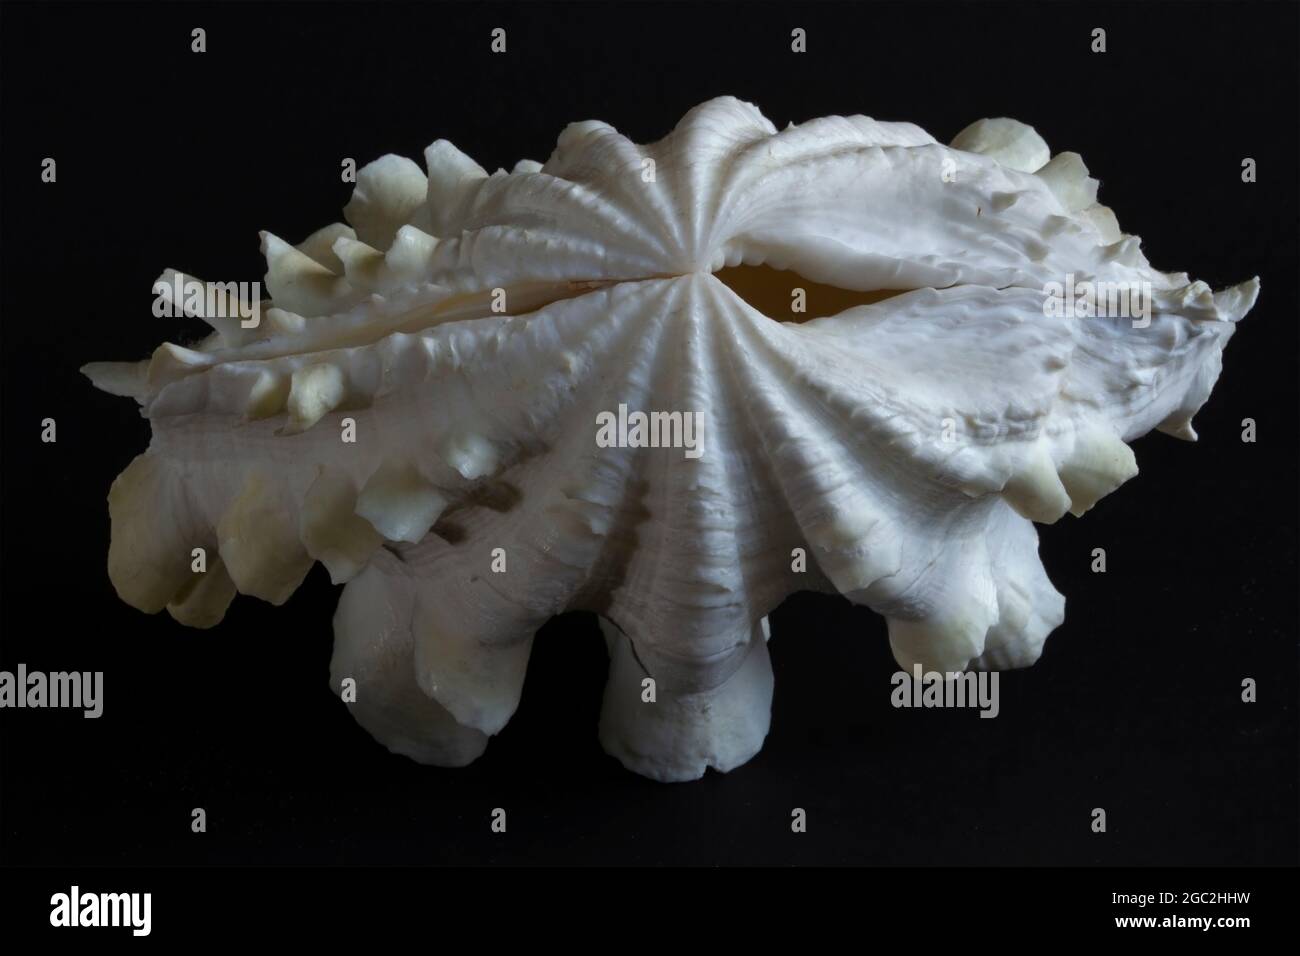 Una delle sole due specie di vongole giganti che si trovano nell'Oceano Indiano Occidentale, la vongola gigante ha scuti distintivi tra le grandi costolette. Foto Stock